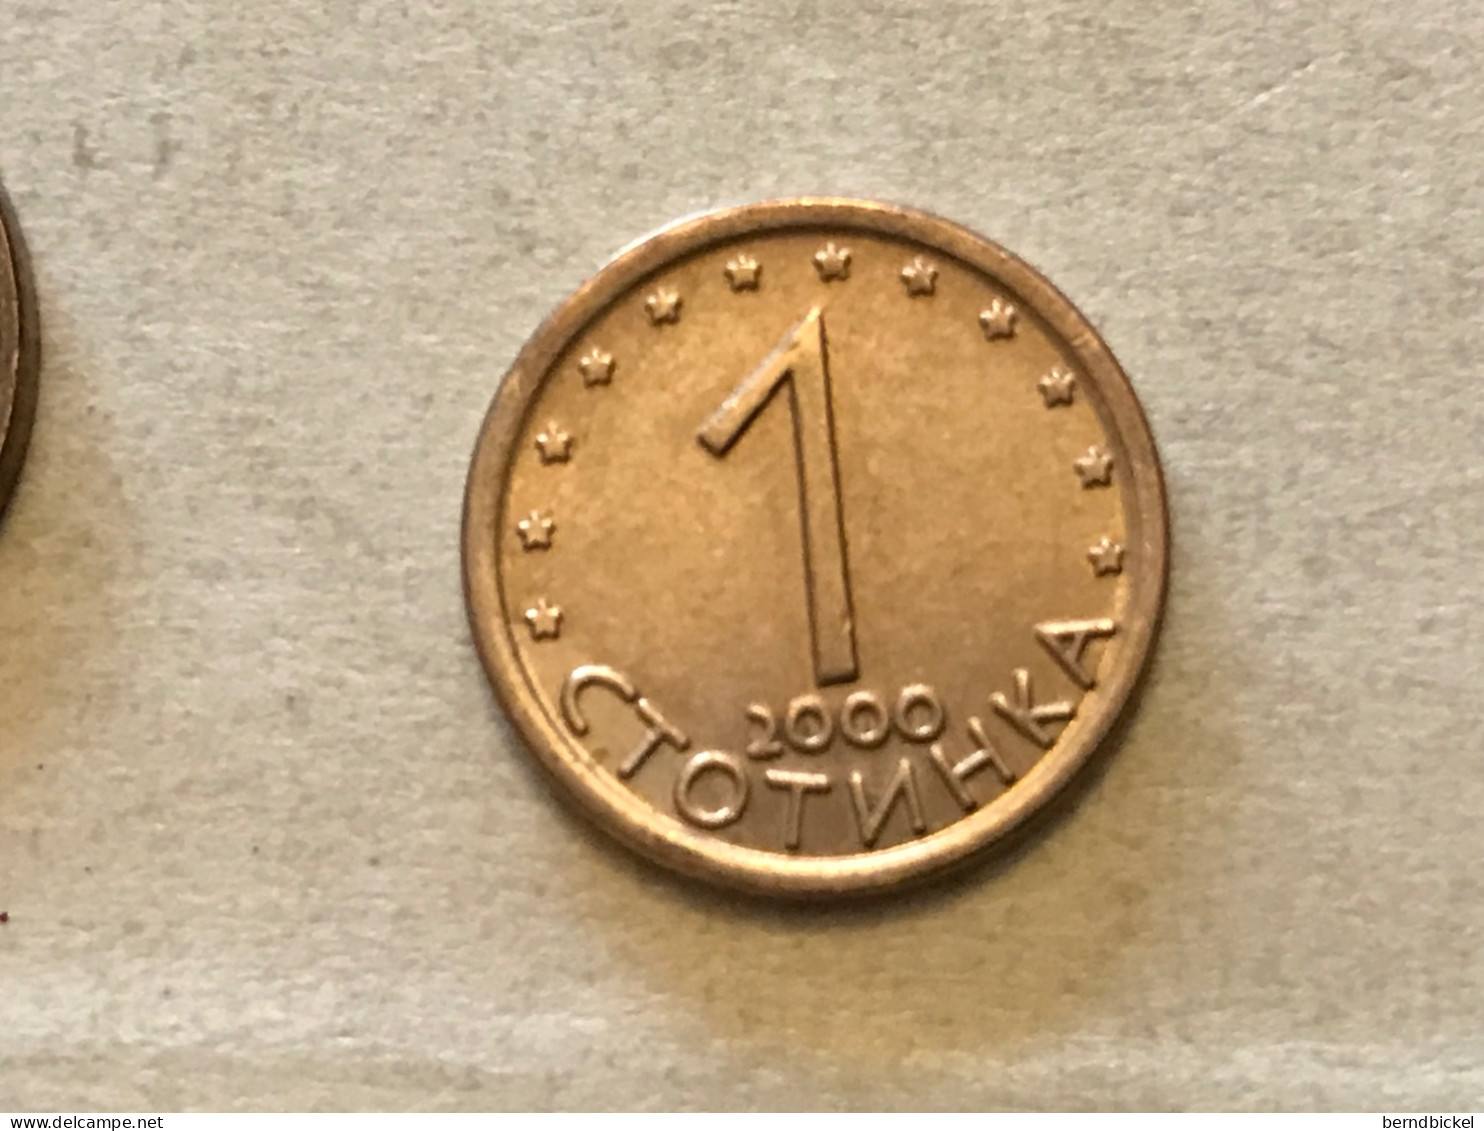 Münze Münzen Umlaufmünze Bulgarien 1 Stotinka 2000 - Bulgarien